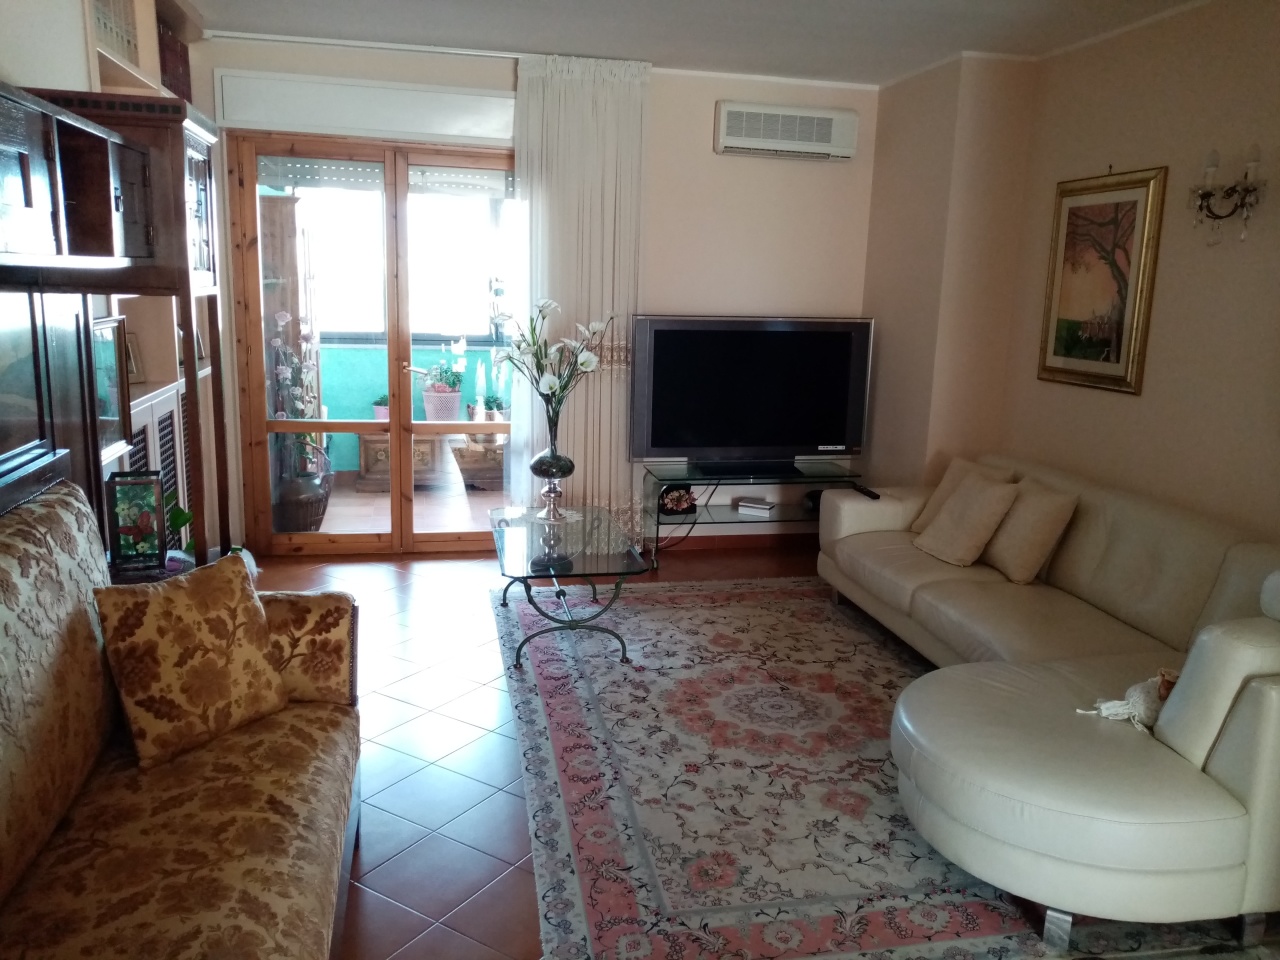 Appartamento in vendita a Terni, 6 locali, prezzo € 50.000 | PortaleAgenzieImmobiliari.it